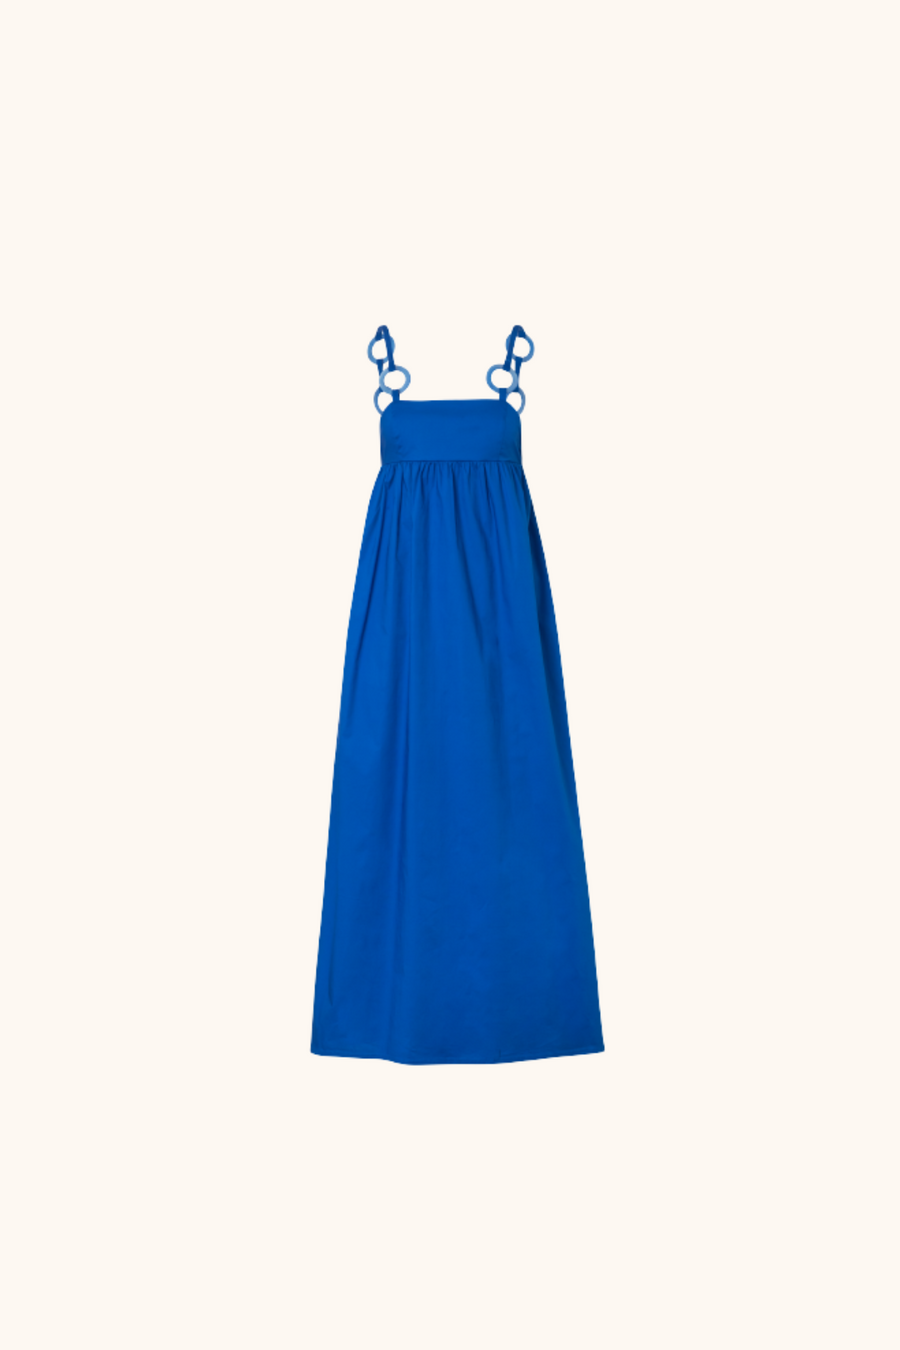 Bahama Blue Maxi Dress